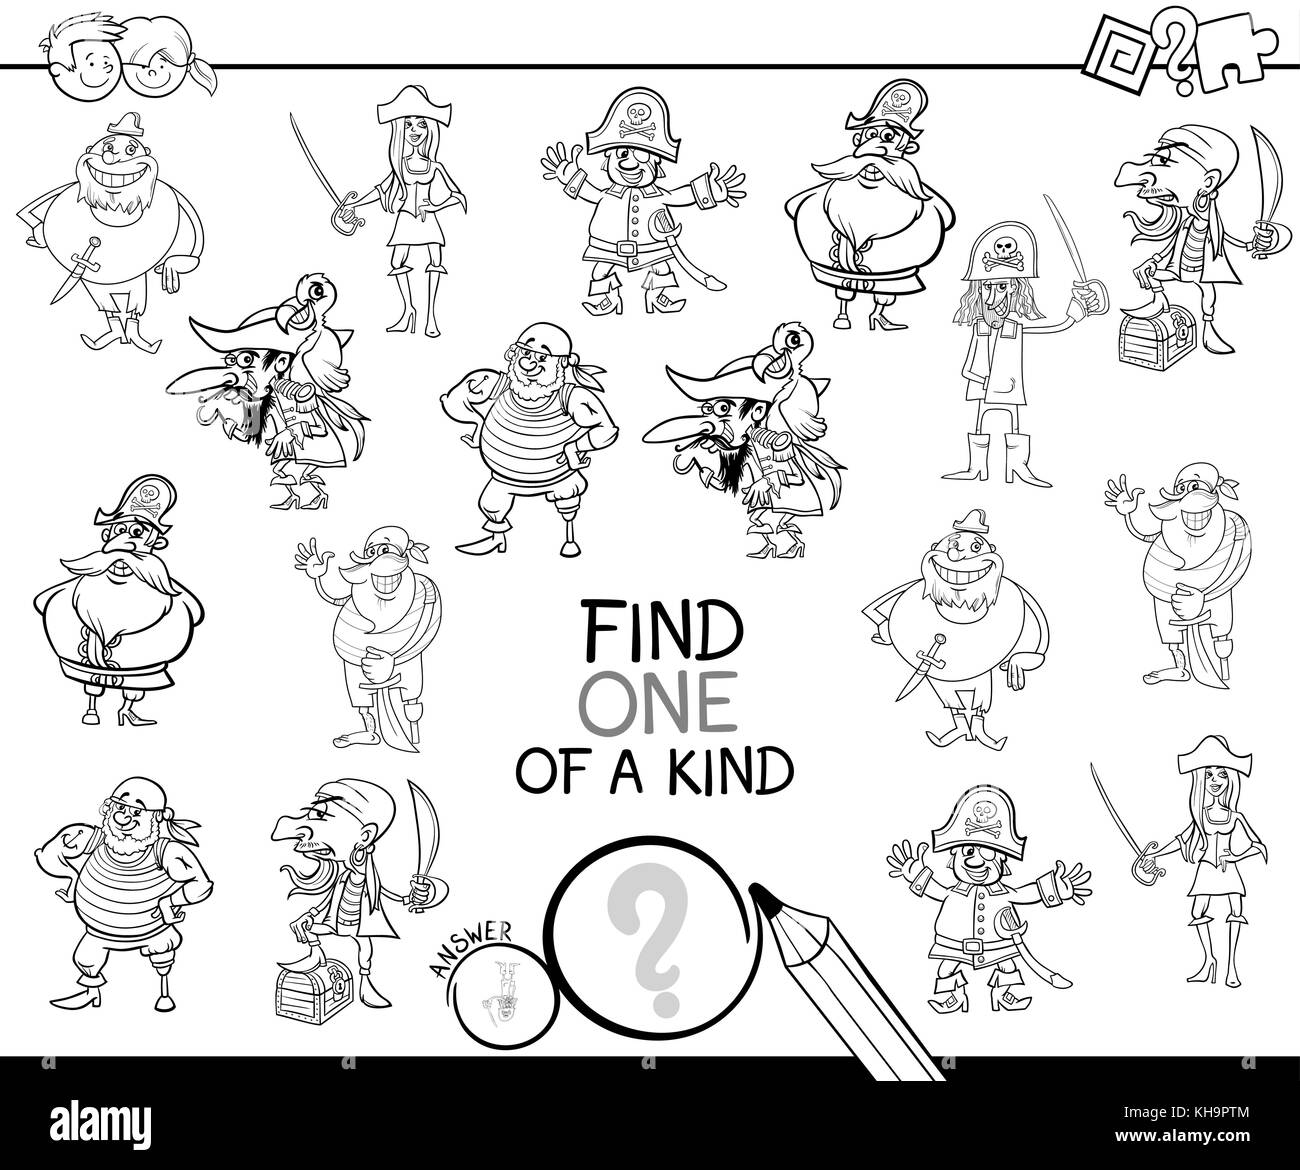 Bianco e nero cartoon illustrazione di trovare un tipo di attività educativa gioco per bambini con pirati caratteri comico libro da colorare Illustrazione Vettoriale